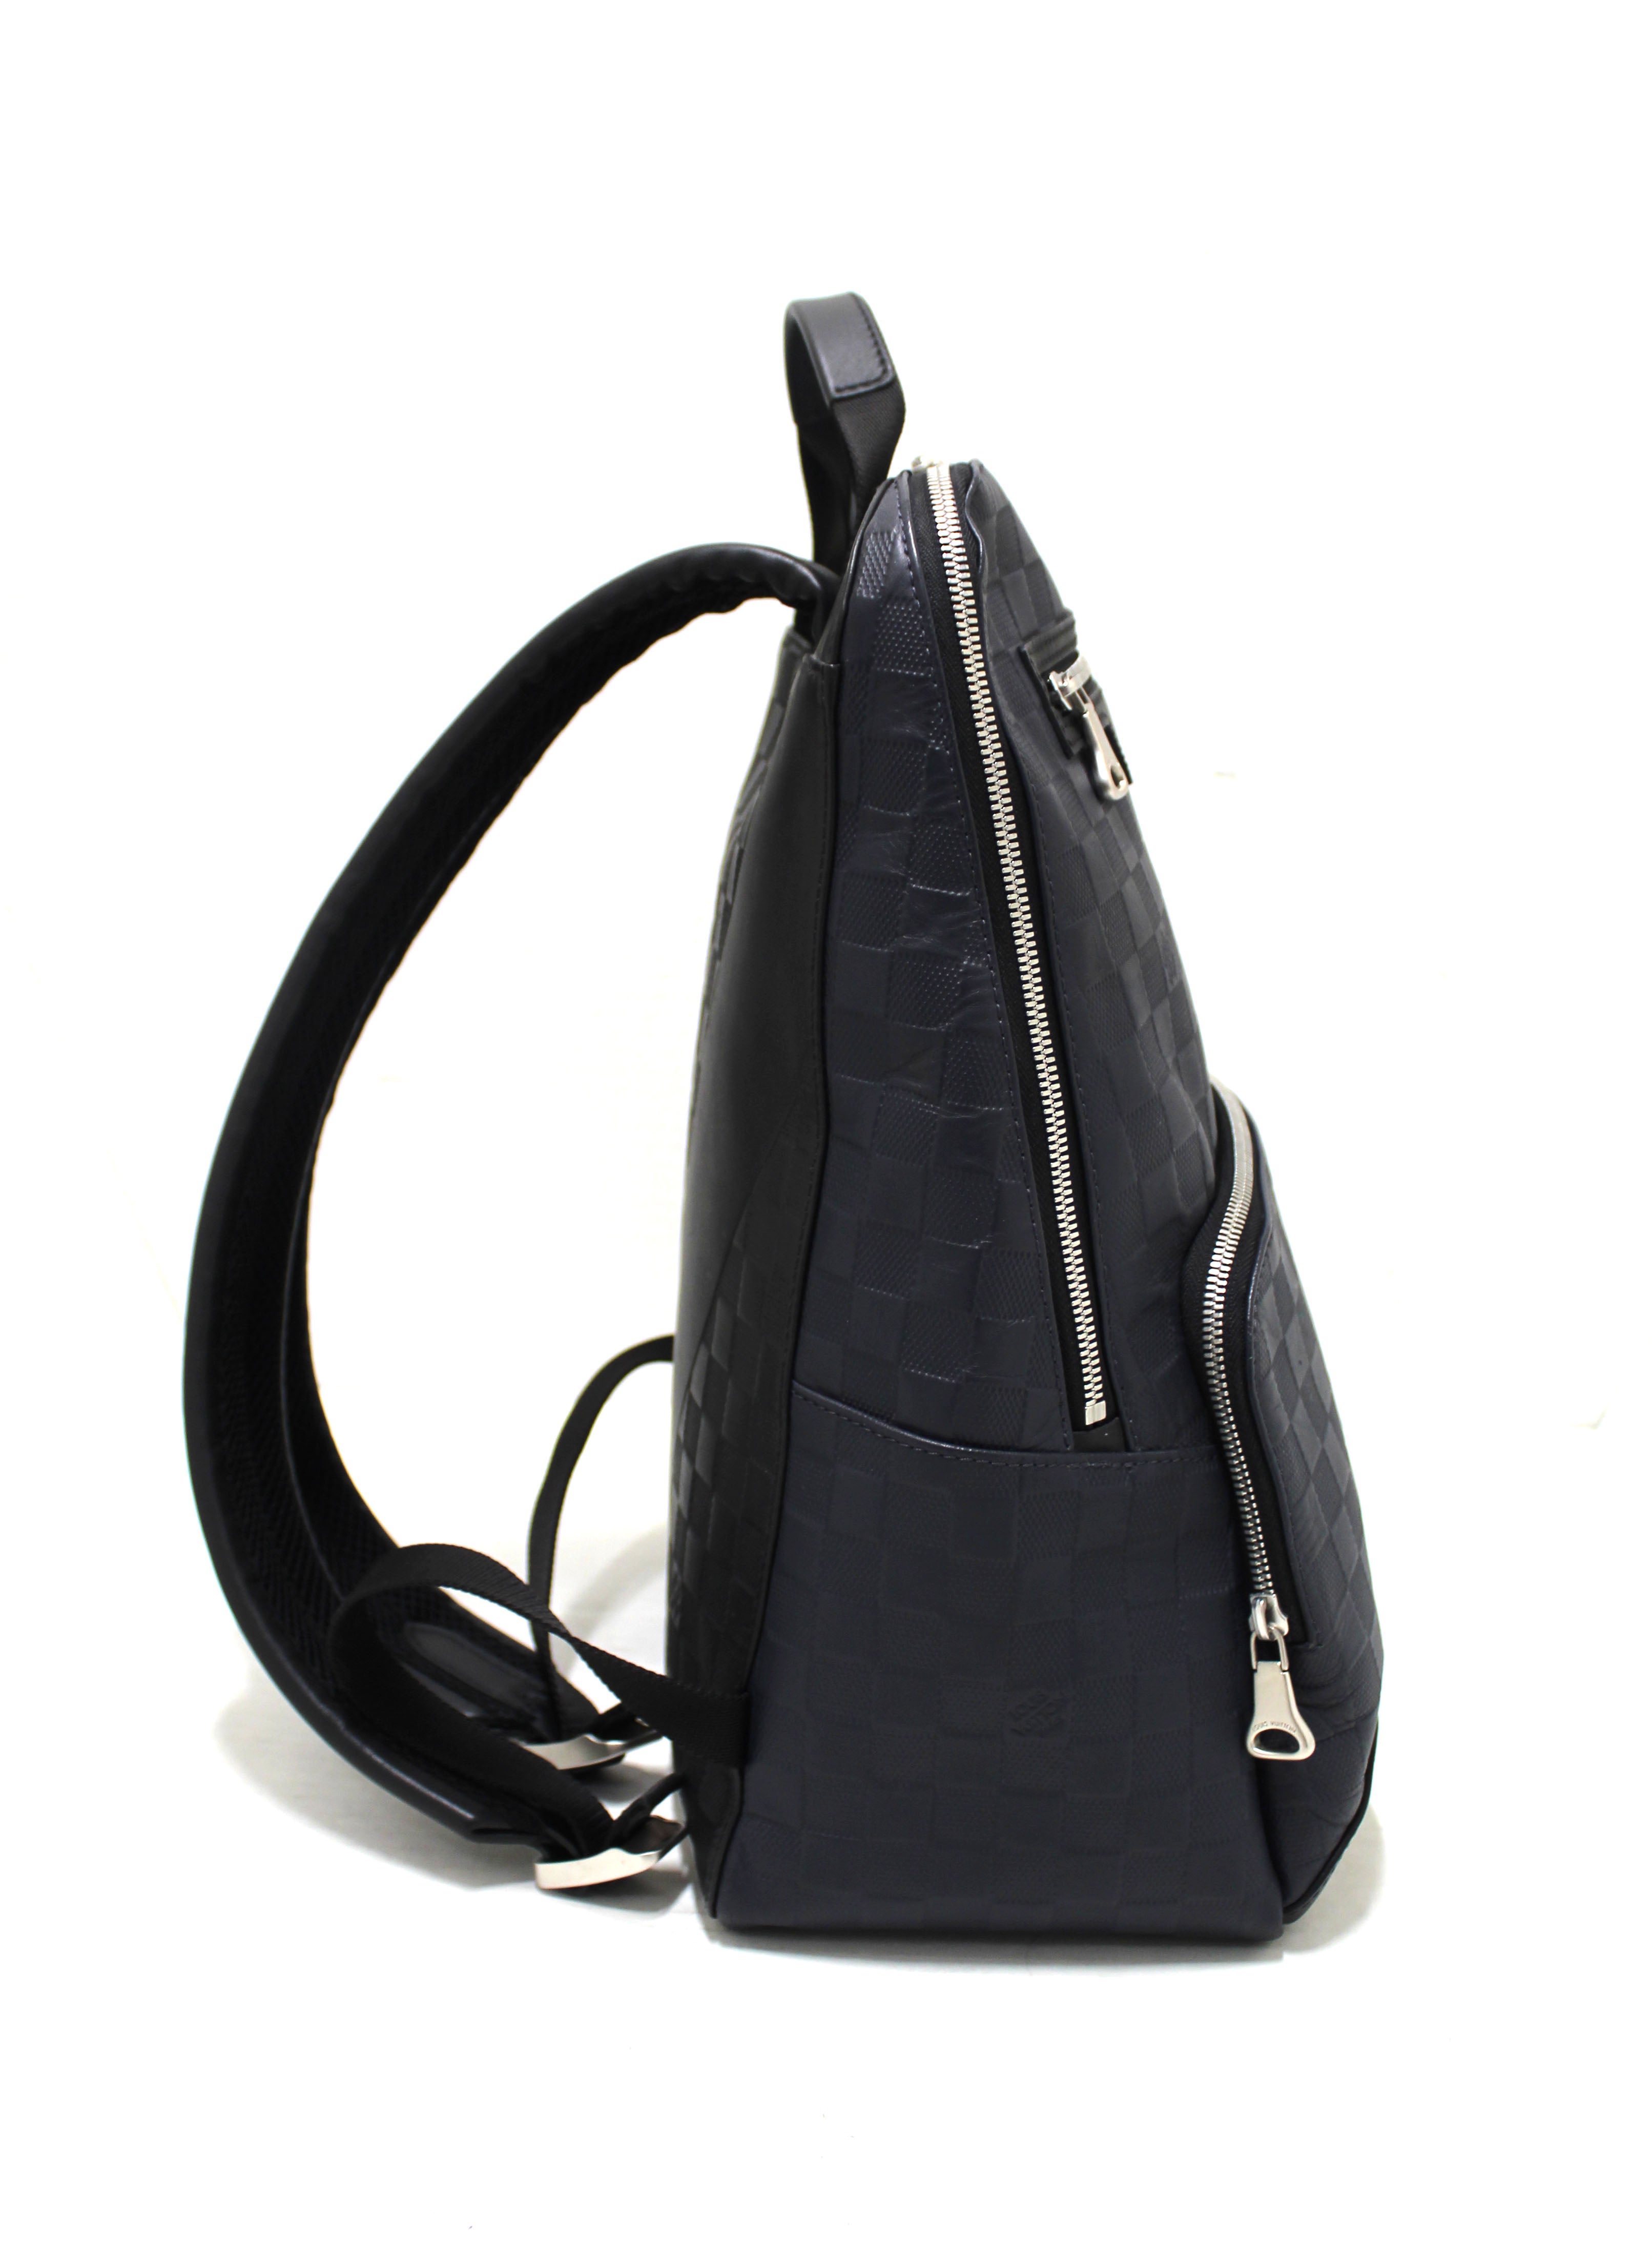 Louis Vuitton Blue Damier Backpack – FirstDibsOnline